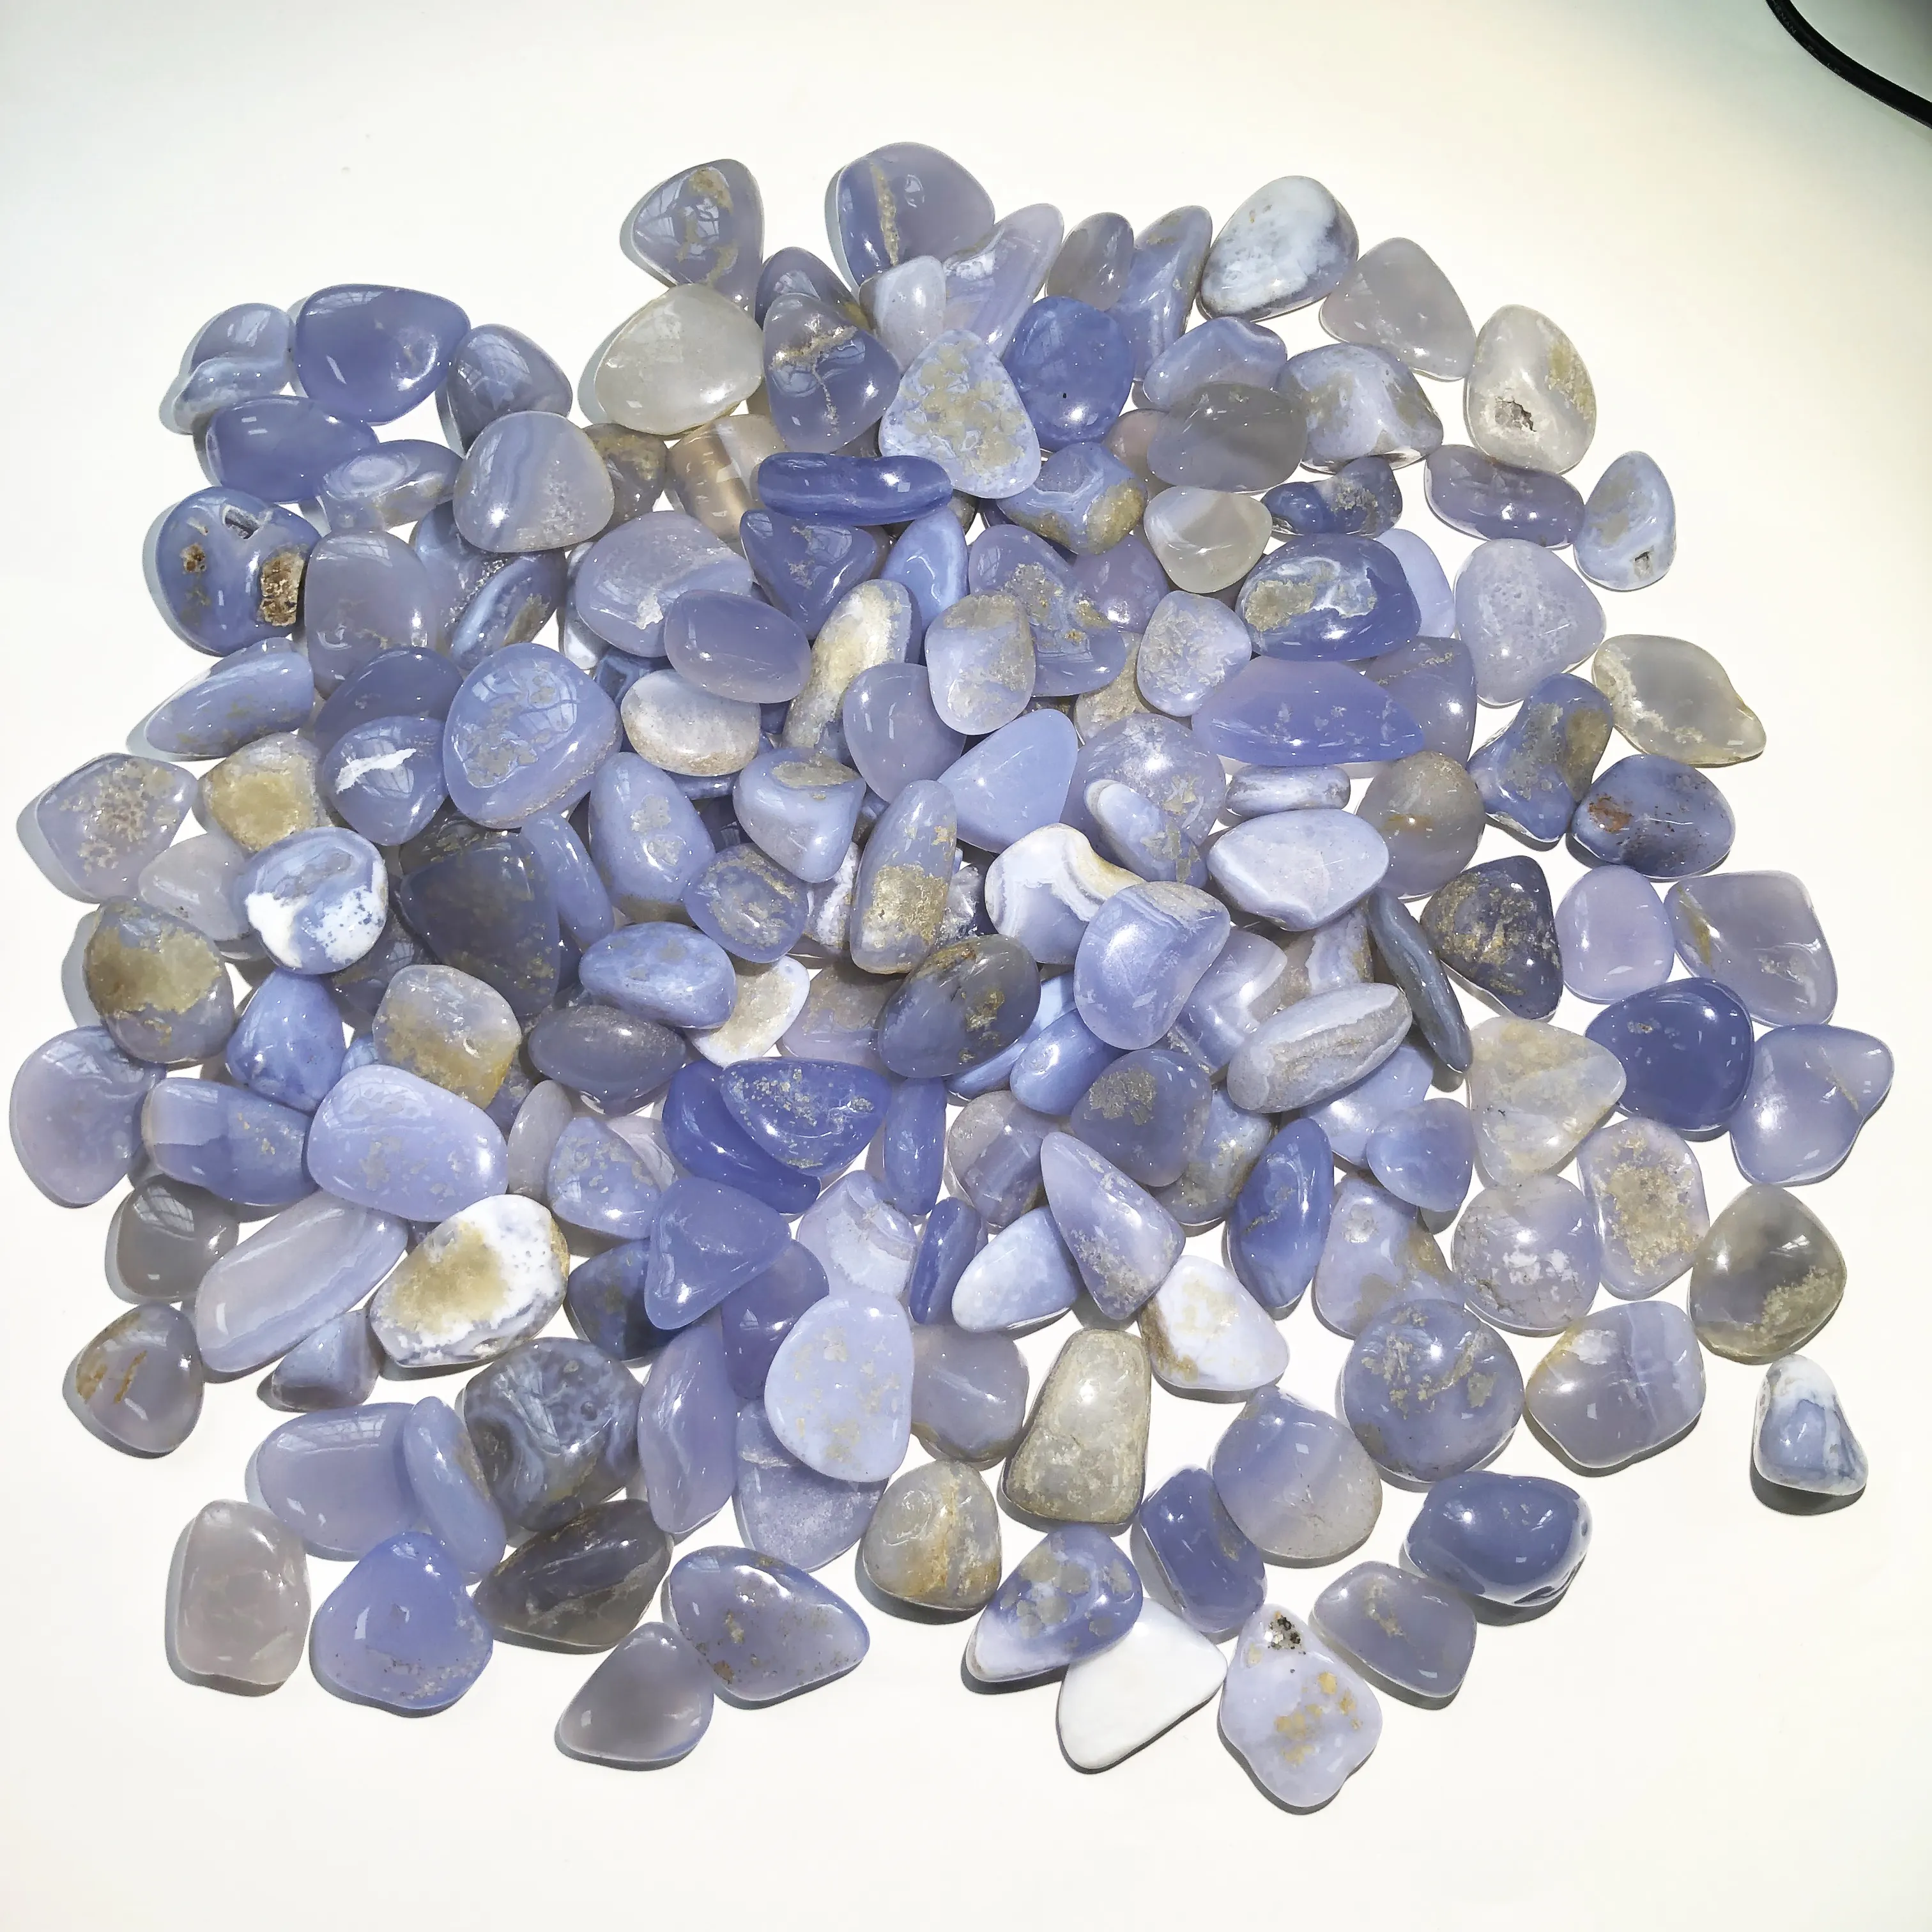 หายากคริสตัลธรรมชาติ Healing Energy พลอย Blue Lace Agate ขนาดใหญ่ Tumbled ขายส่งราคา